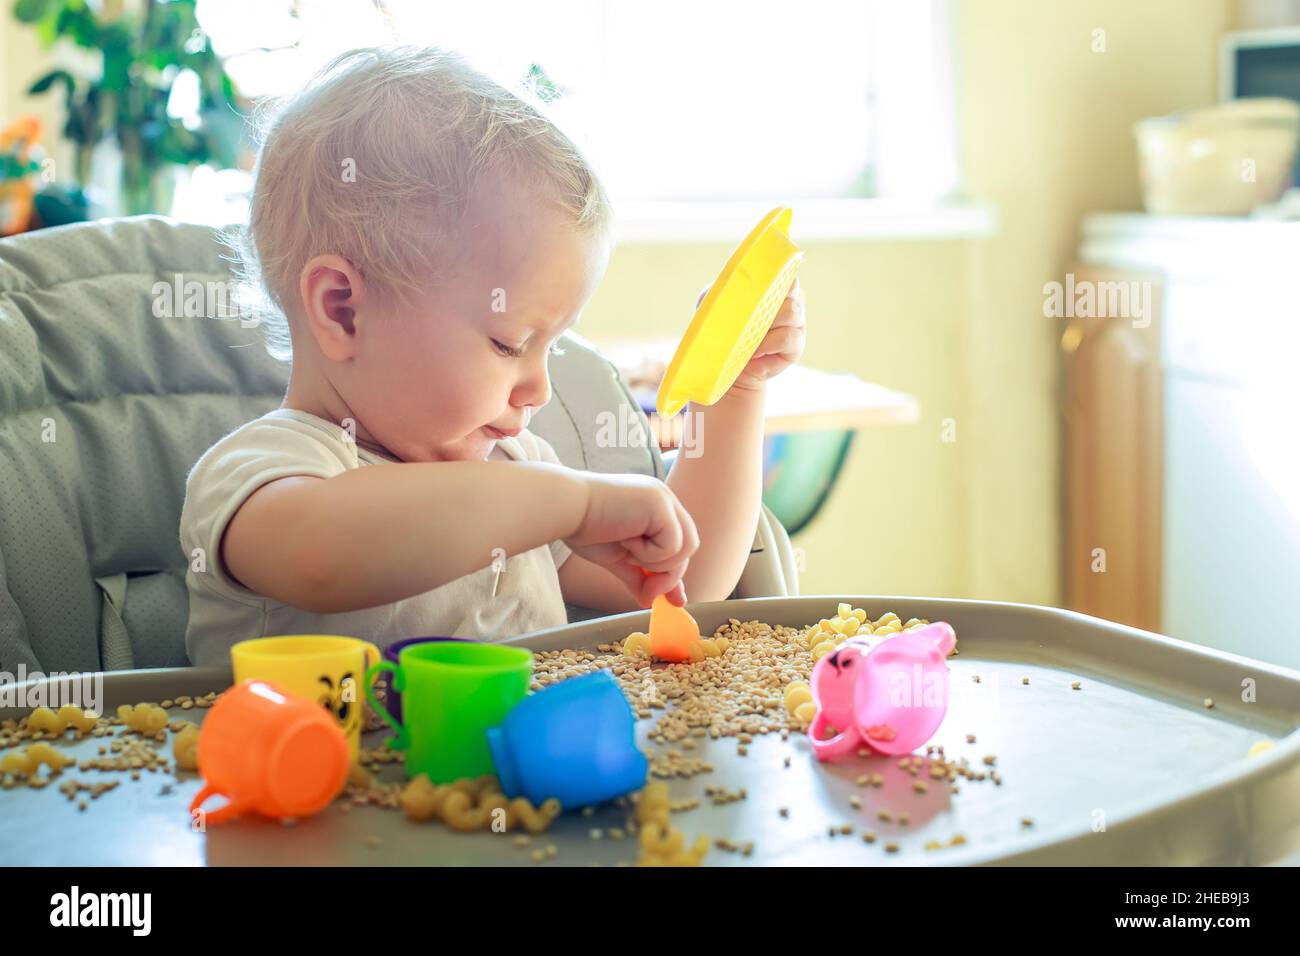 petit enfant assis sur une chaise d'alimentation et joue avec des ustensiles de jouet et du grain. développement de compétences en moteur fin chez les enfants jusqu'à l'année. Développement précoce Banque D'Images